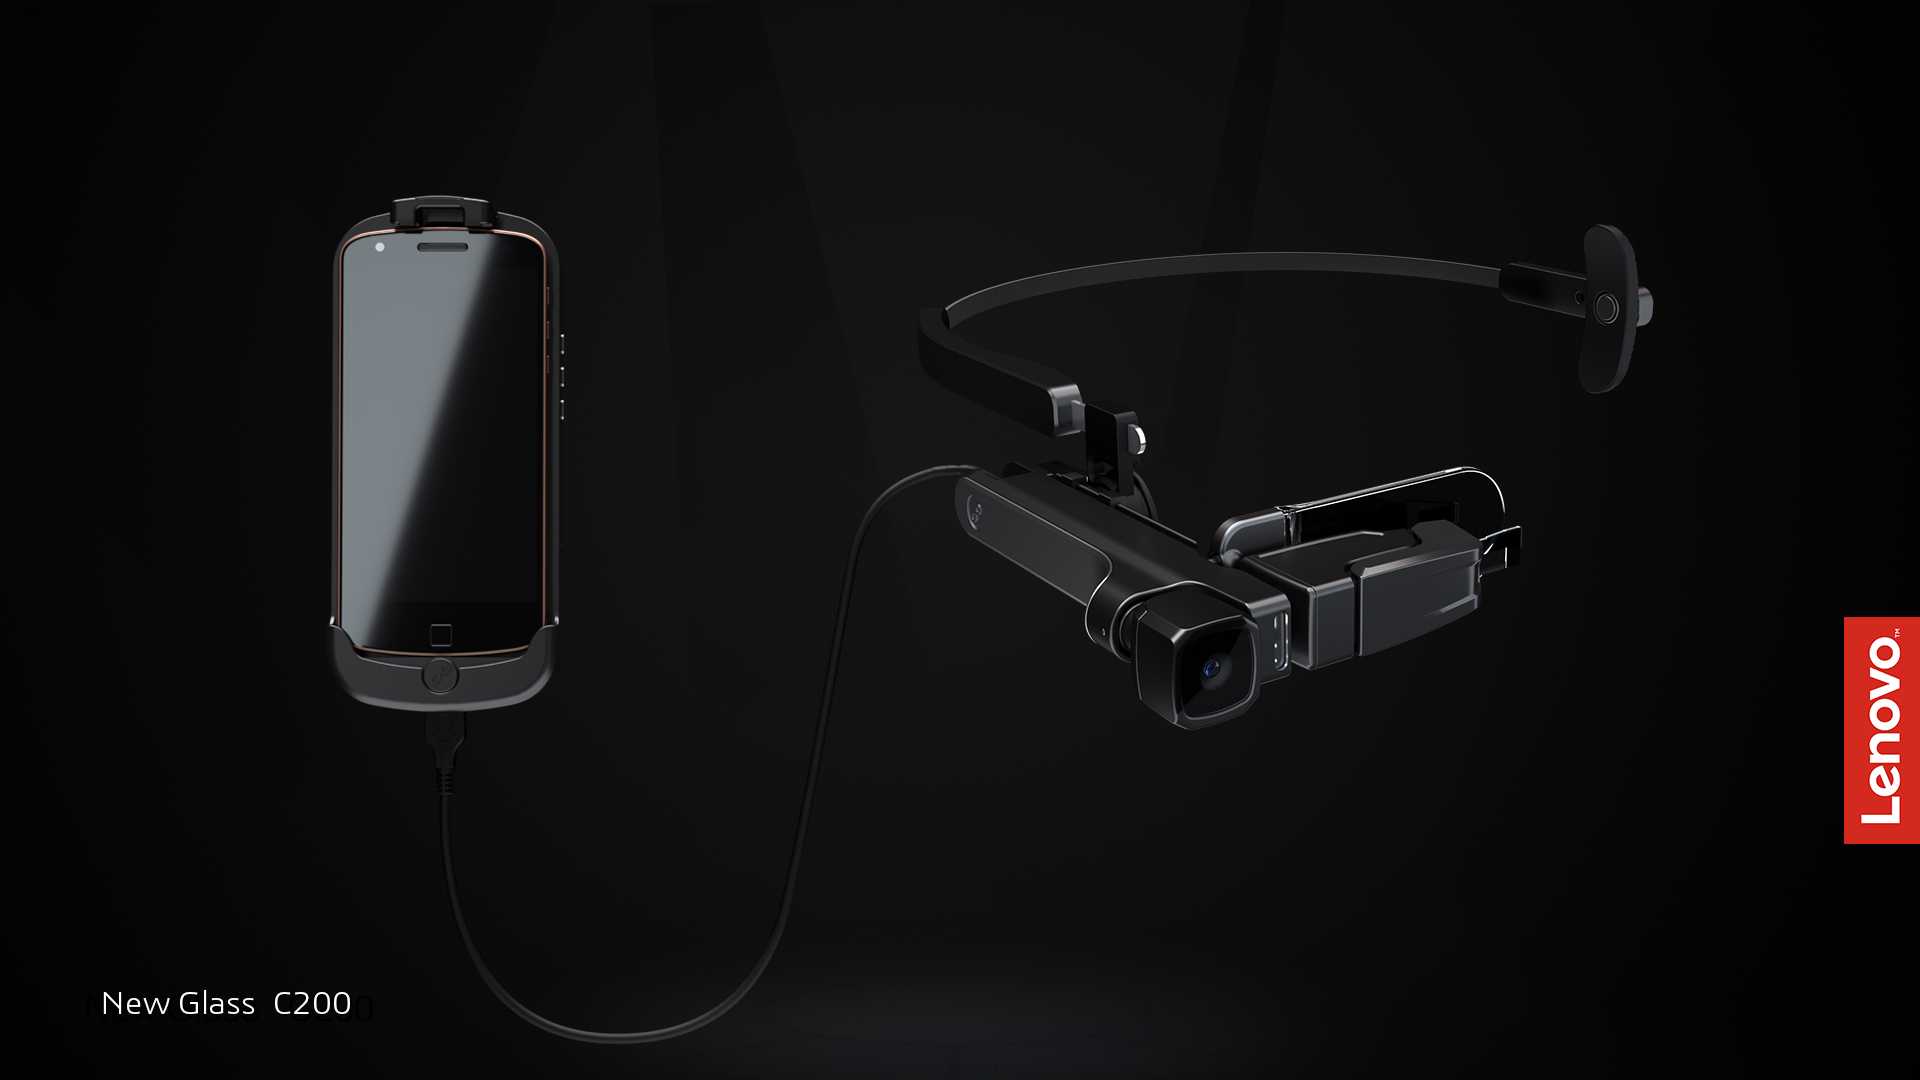 Bu VR Gözlüğü 'Yeni': Lenovo New Glass C200